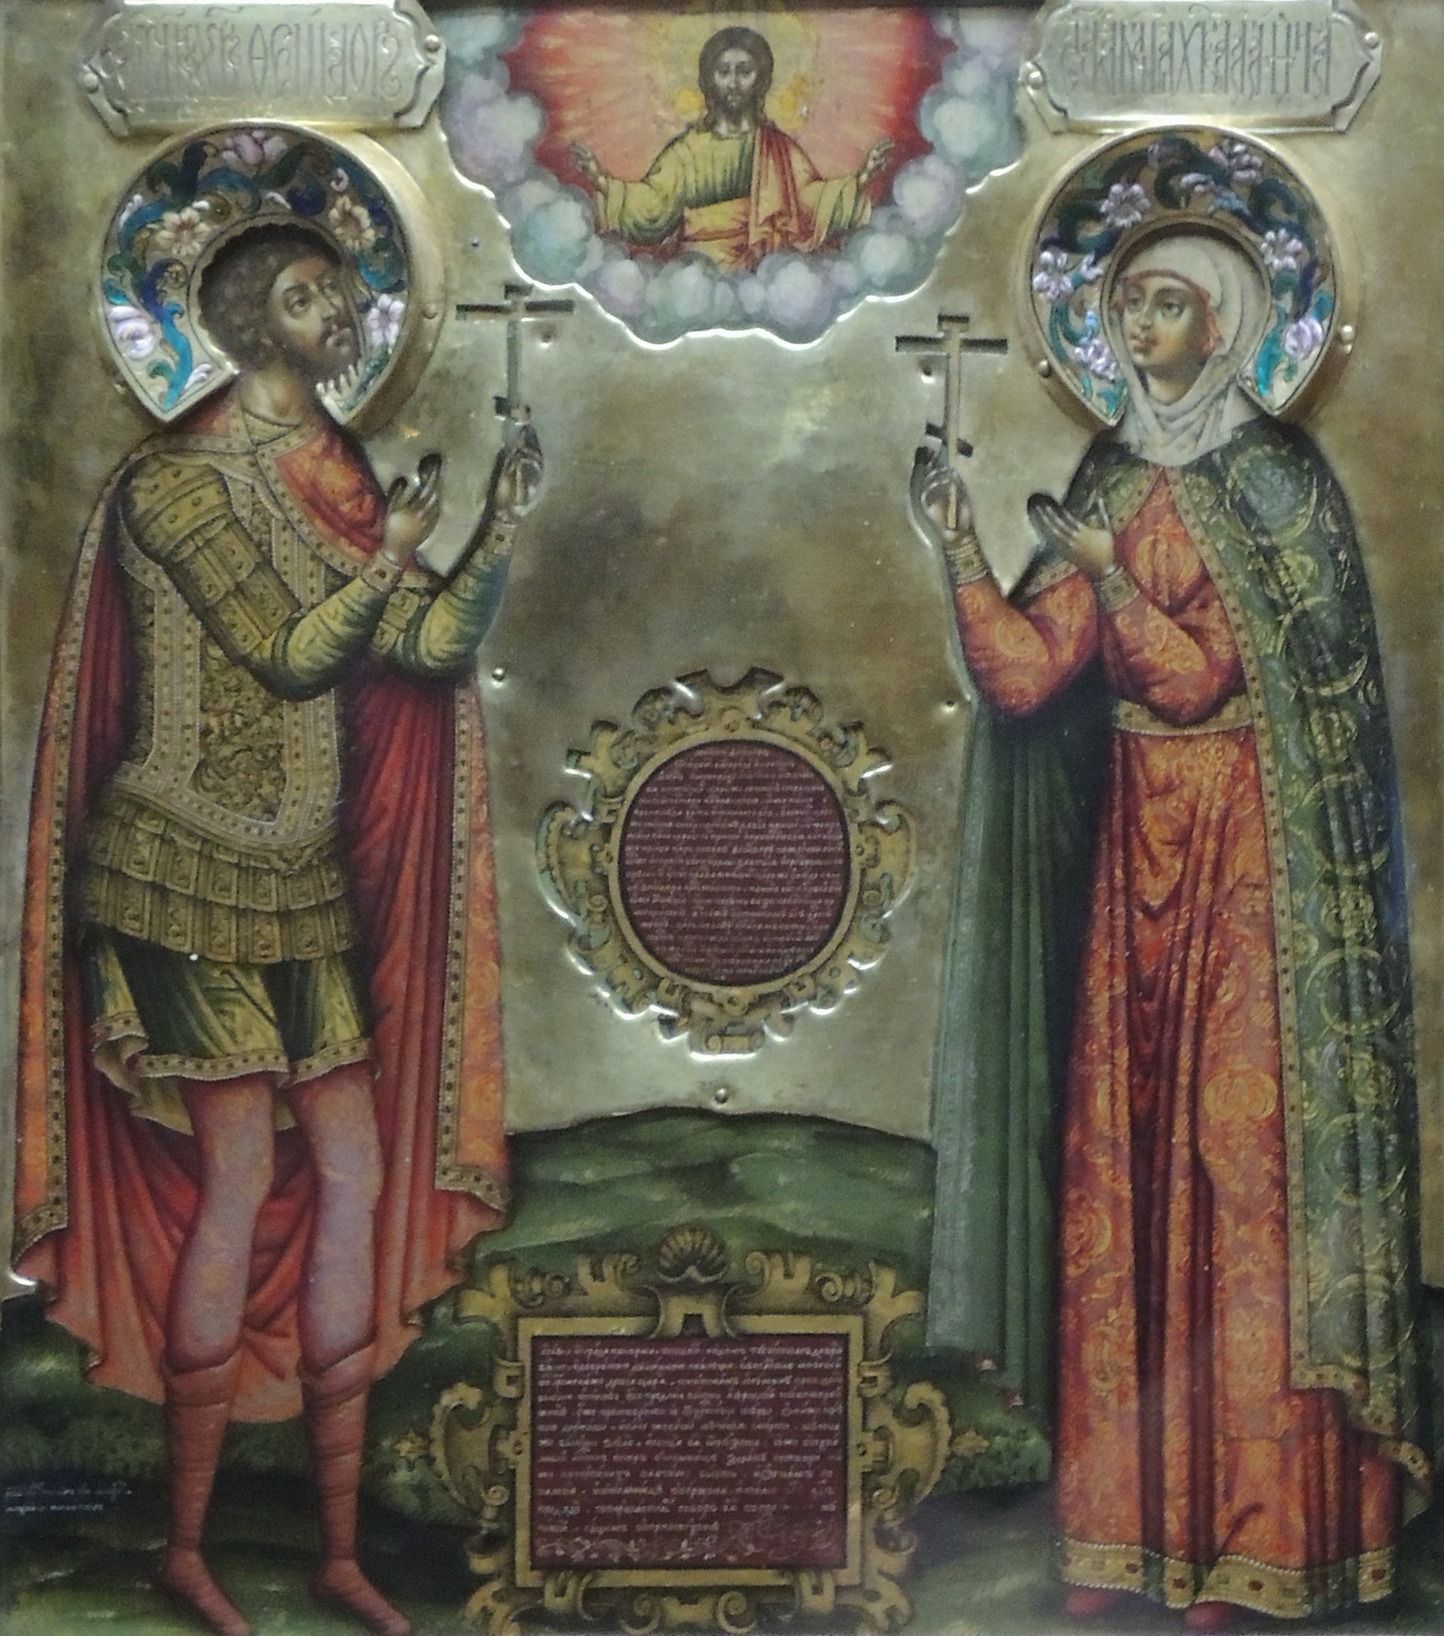 Fiodor i Agata przedstawieni wspólnie na ikonie z 1681 roku (fot. Shakko, lic. CC BY-SA 3.0).